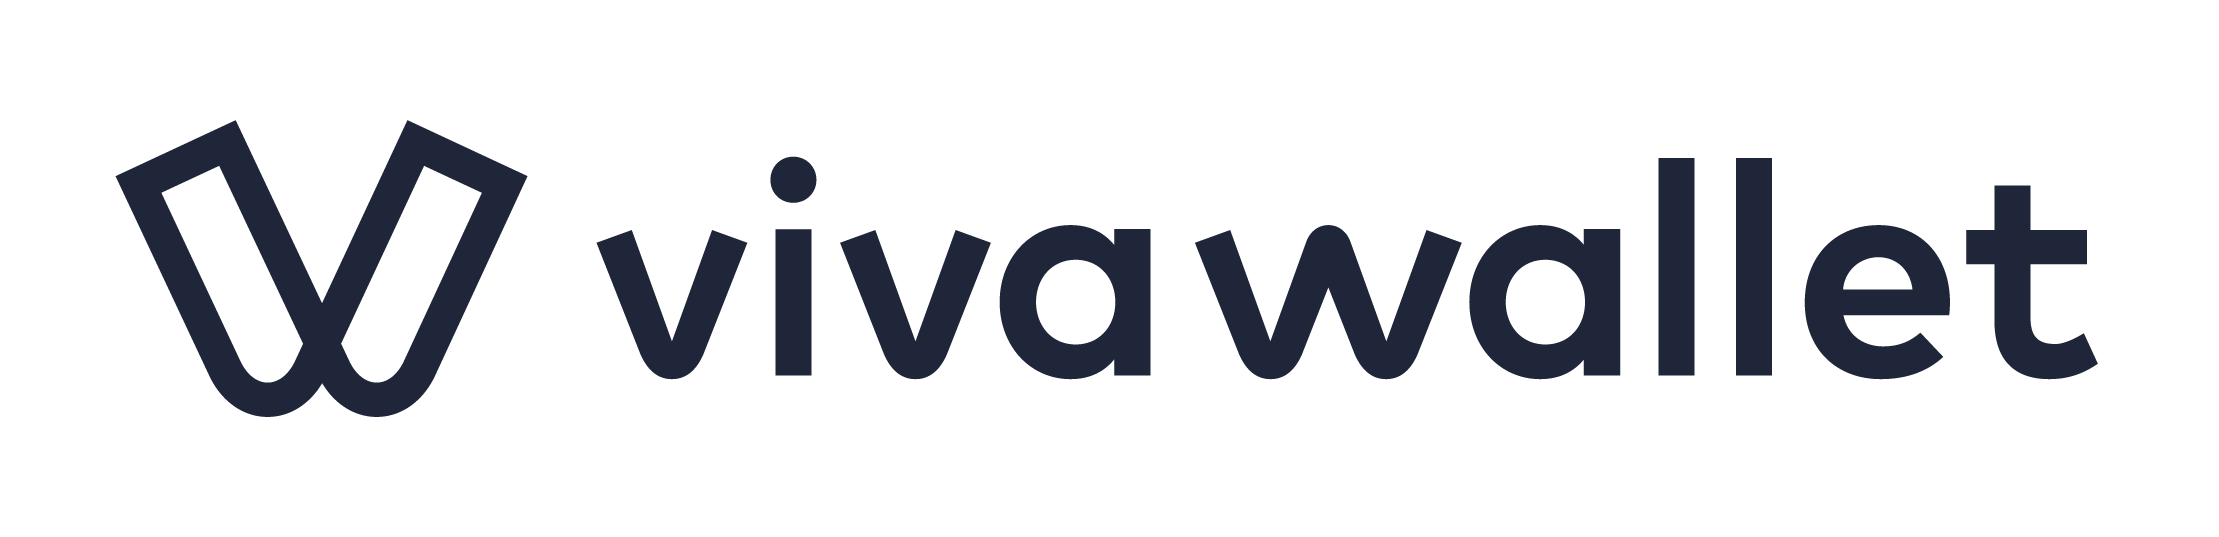 Viva Wallet Company Logo